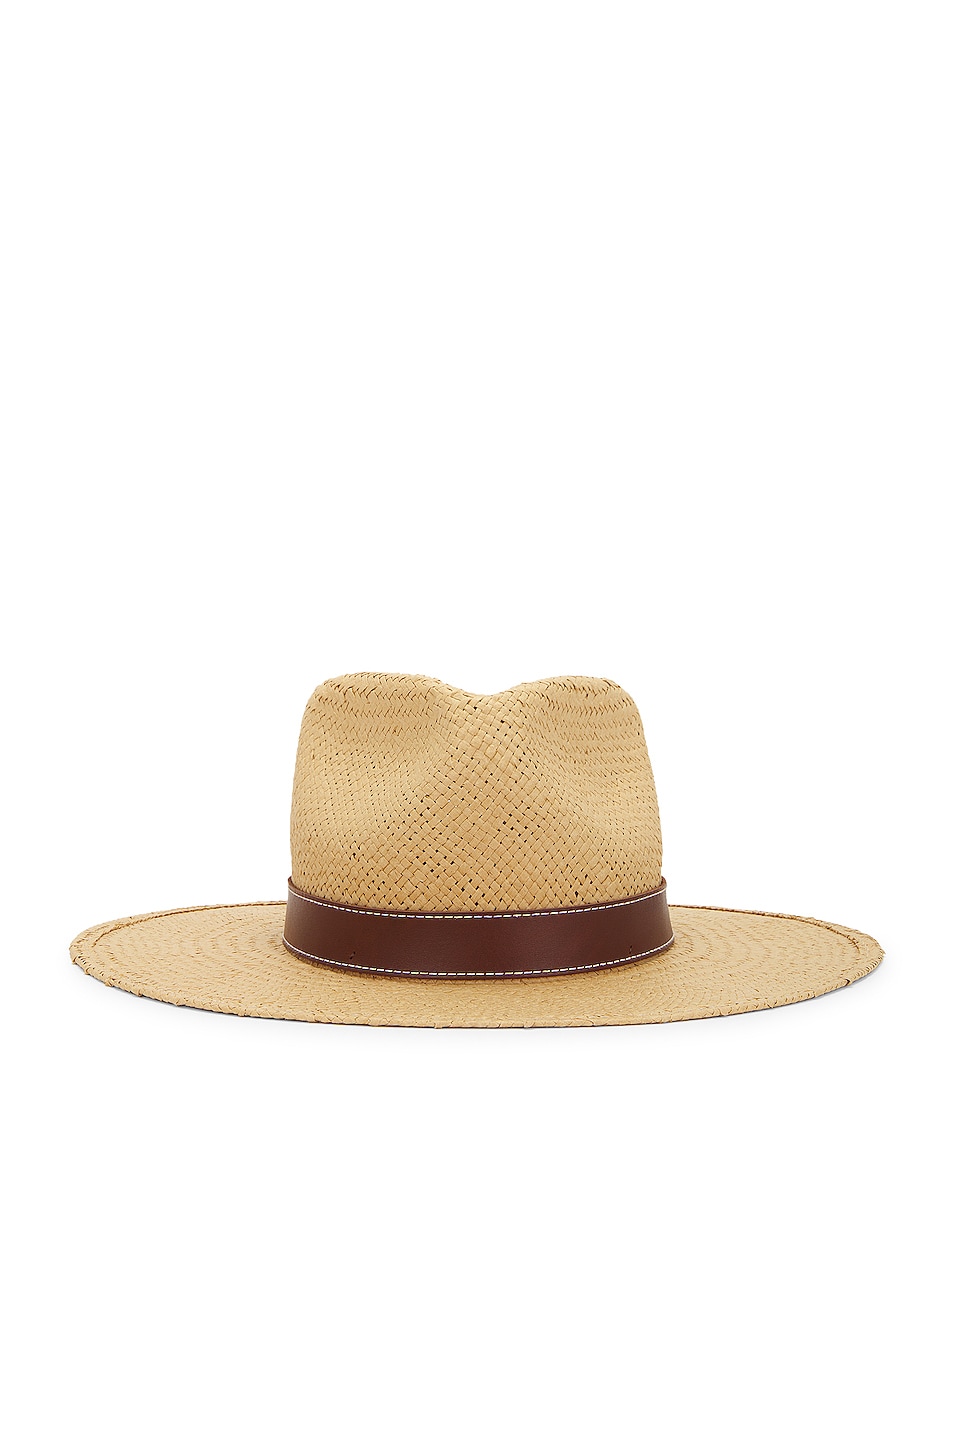 Halston Packable Hat in Tan